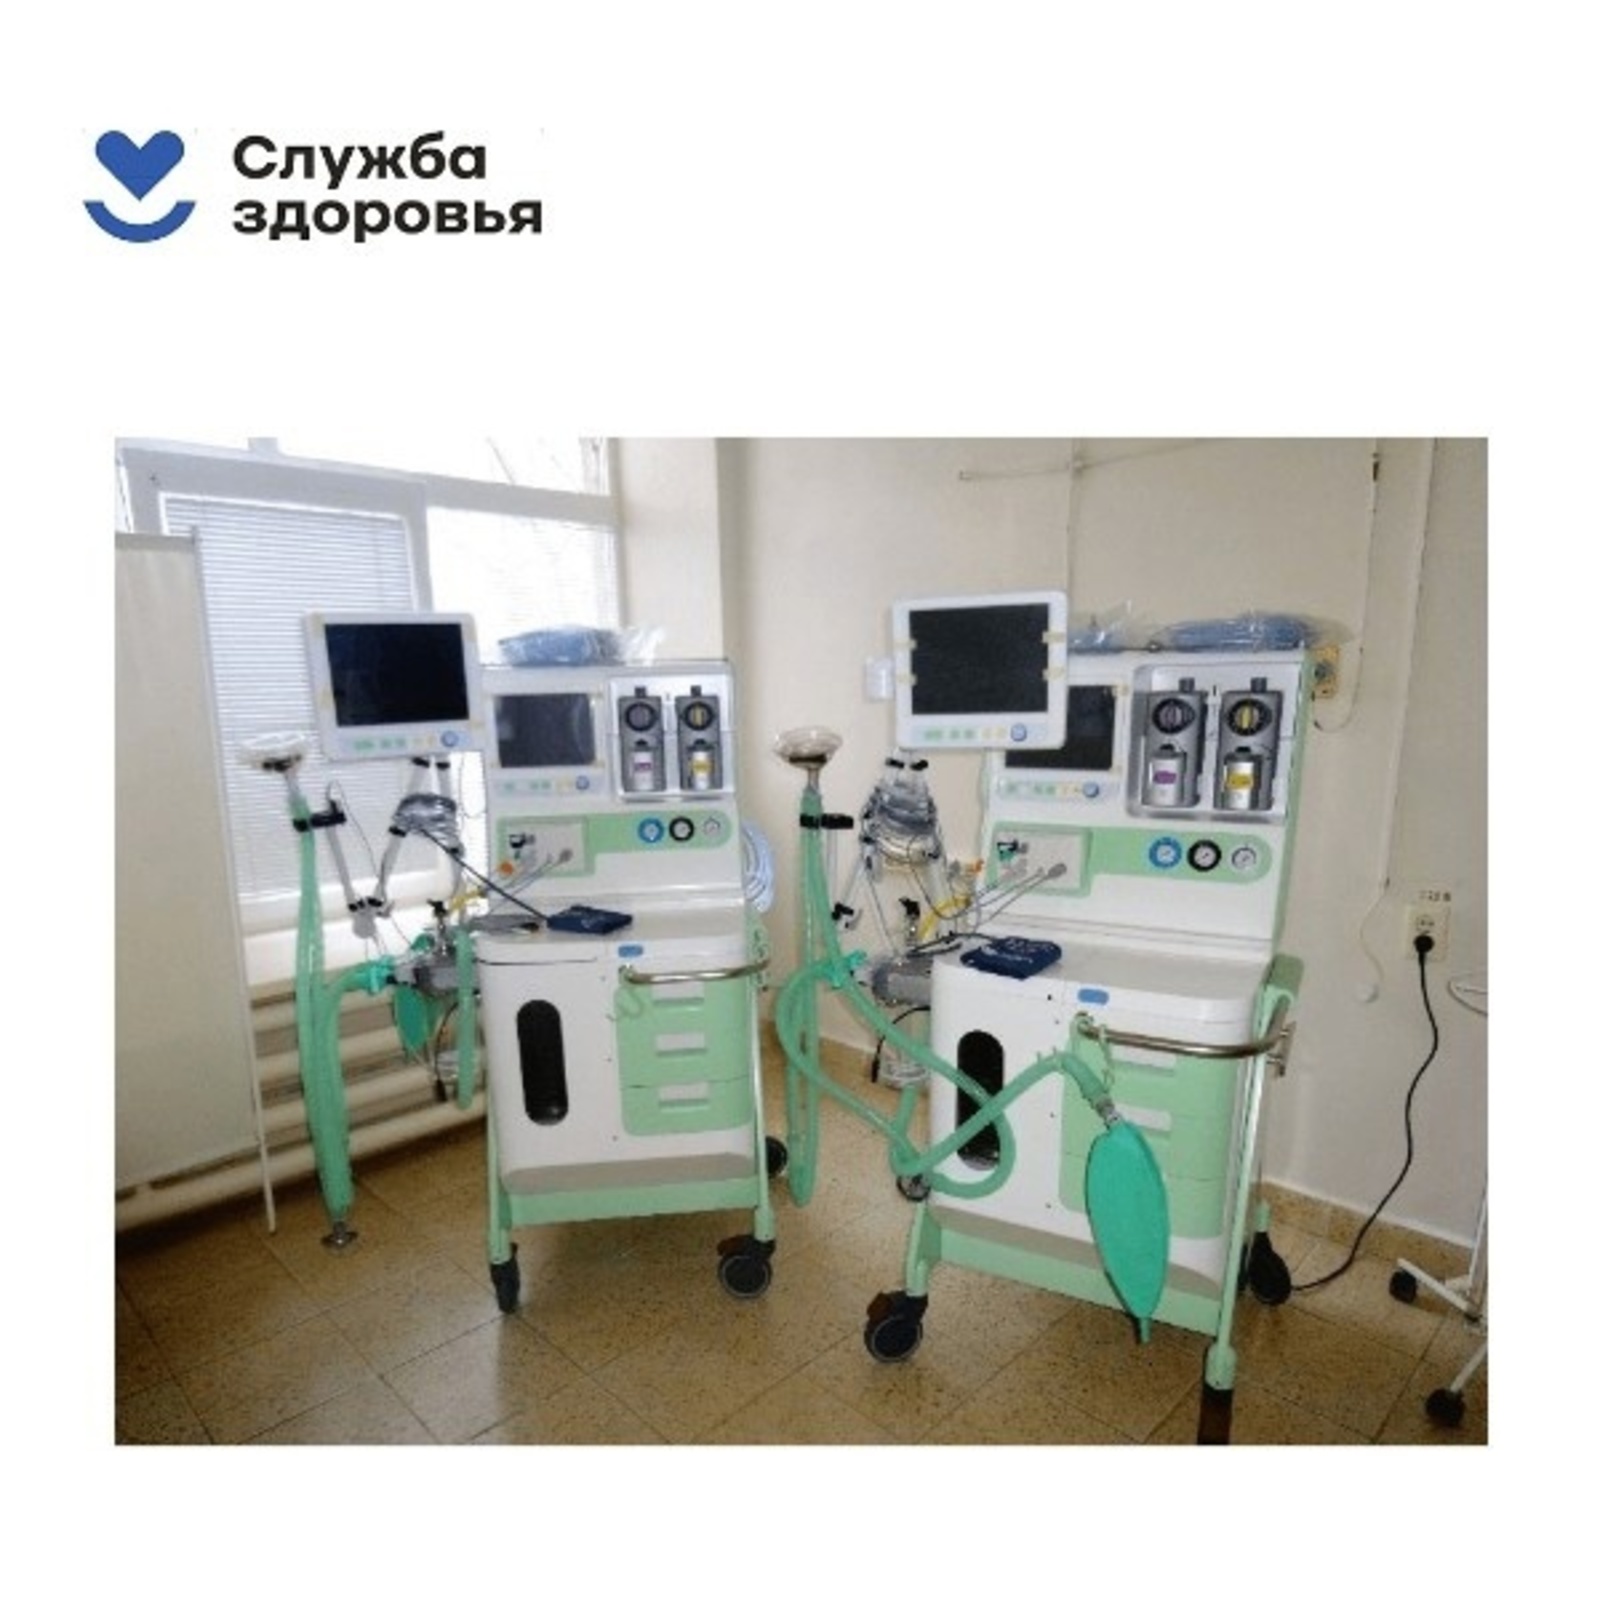 Раевская центральная районная больница получила современные аппараты анестезии